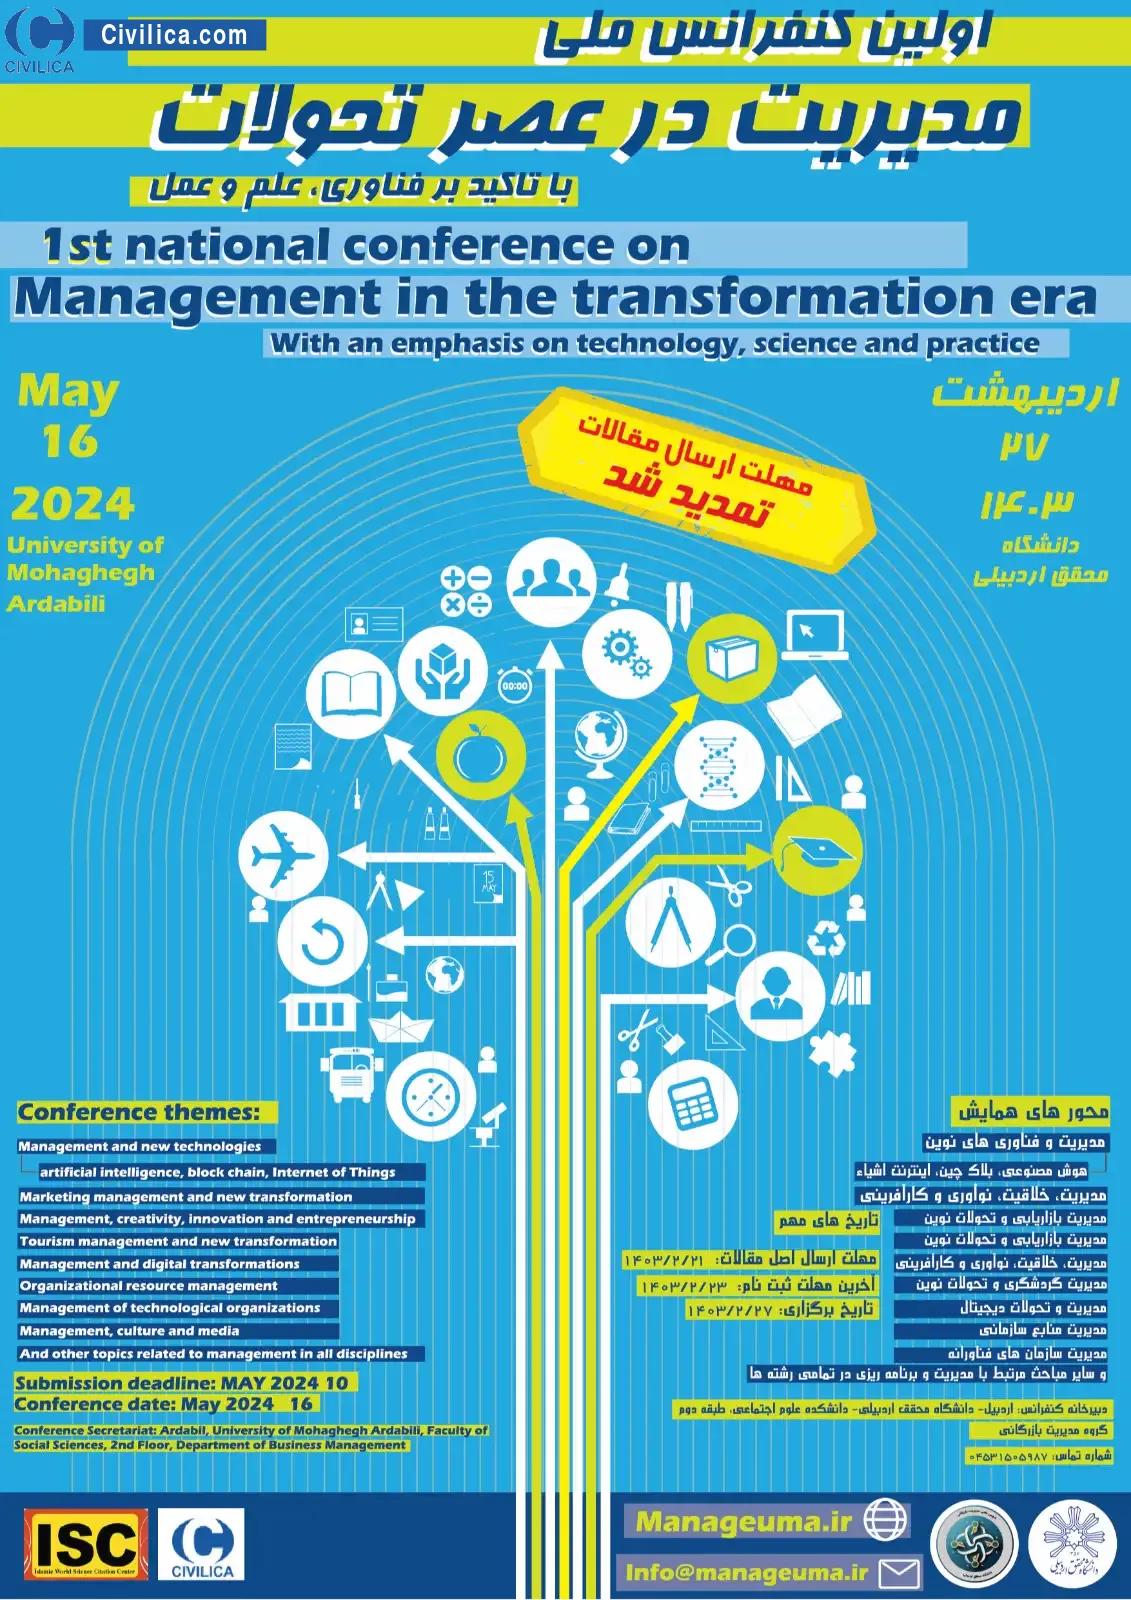 فراخوان مقاله اولین کنفرانس ملی مدیریت در عصر تحولات با تاکید بر فناوری، علم و عمل